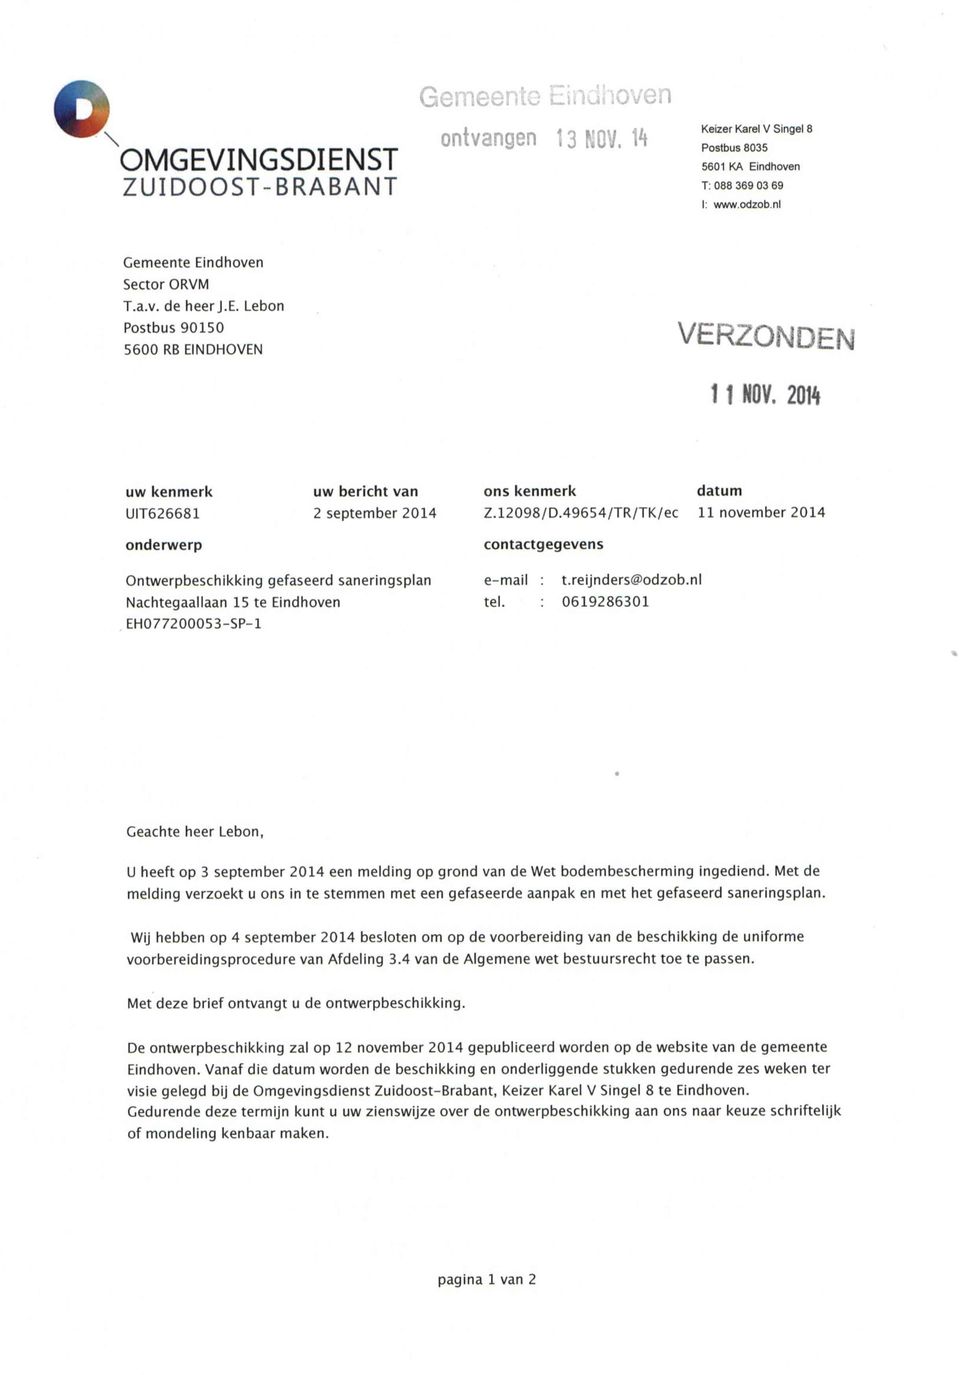 49654/TR/TK/ec datum 11 november 2014 onderwerp contactgegevens Ontwerpbeschikking gefaseerd saneringsplan Nachtegaallaan 15 te Eindhoven EH077200053-SP-1 e-mail : t.reljnders@odzob.nl tel.